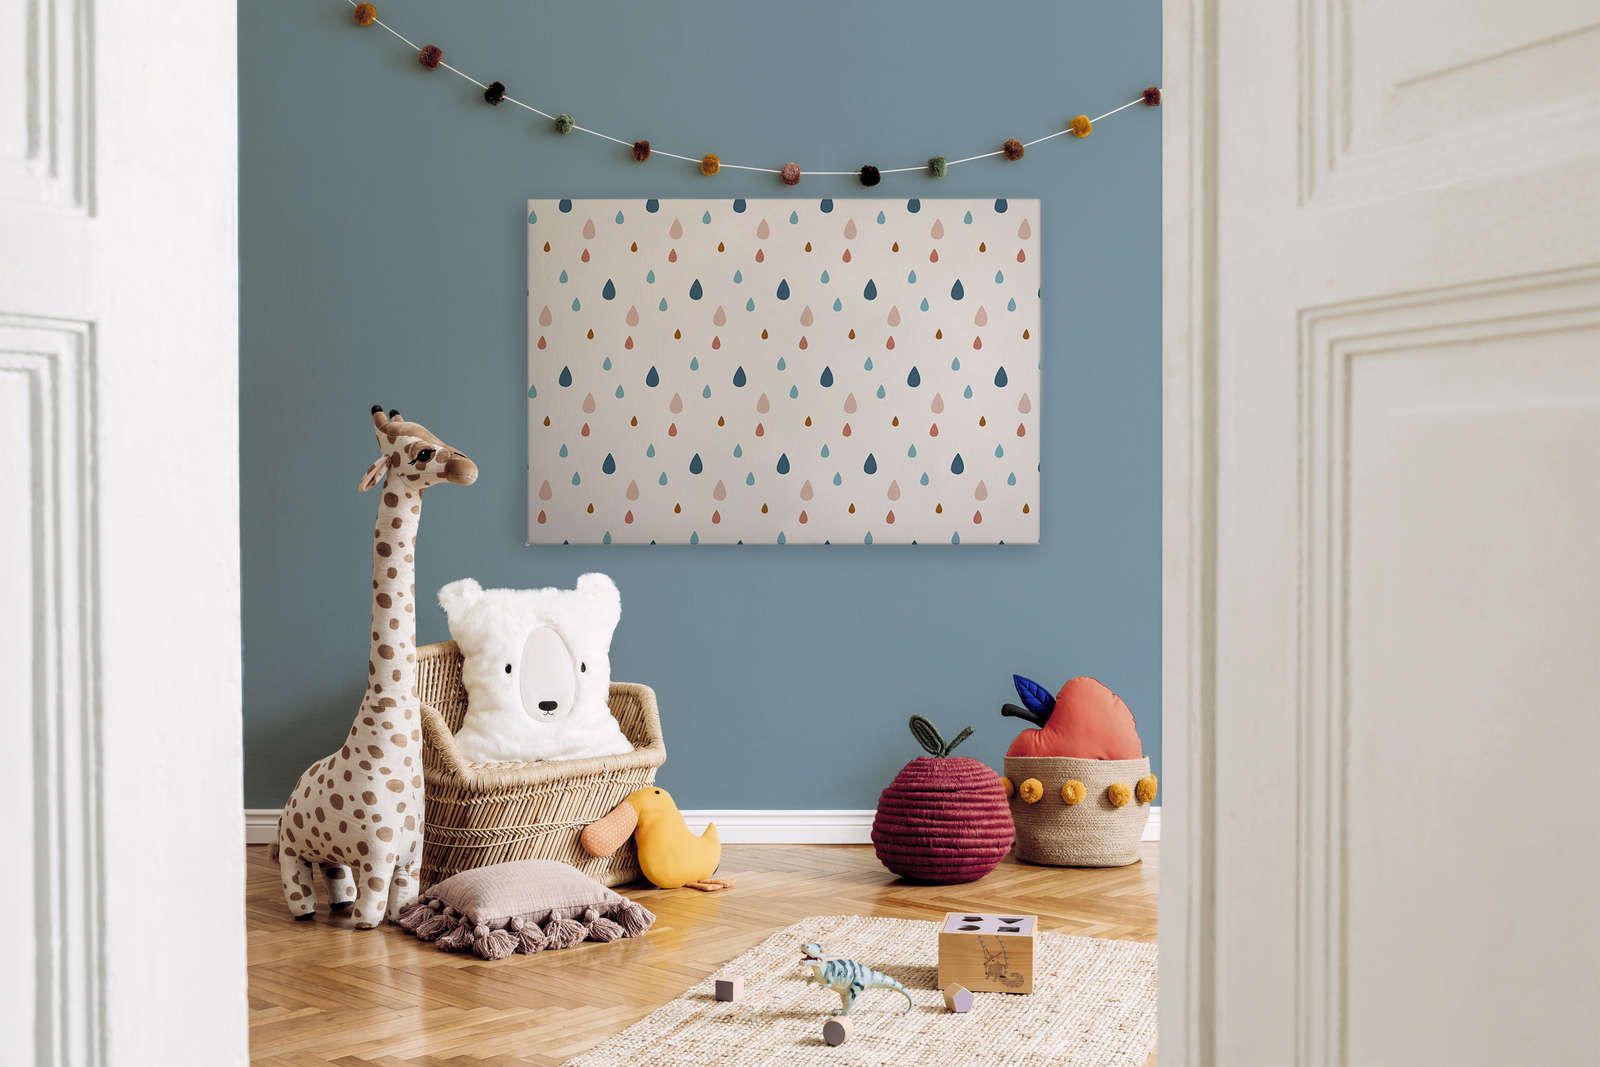             Leinwand fürs Kinderzimmer mit bunten Wassertropfen – 120 cm x 80 cm
        